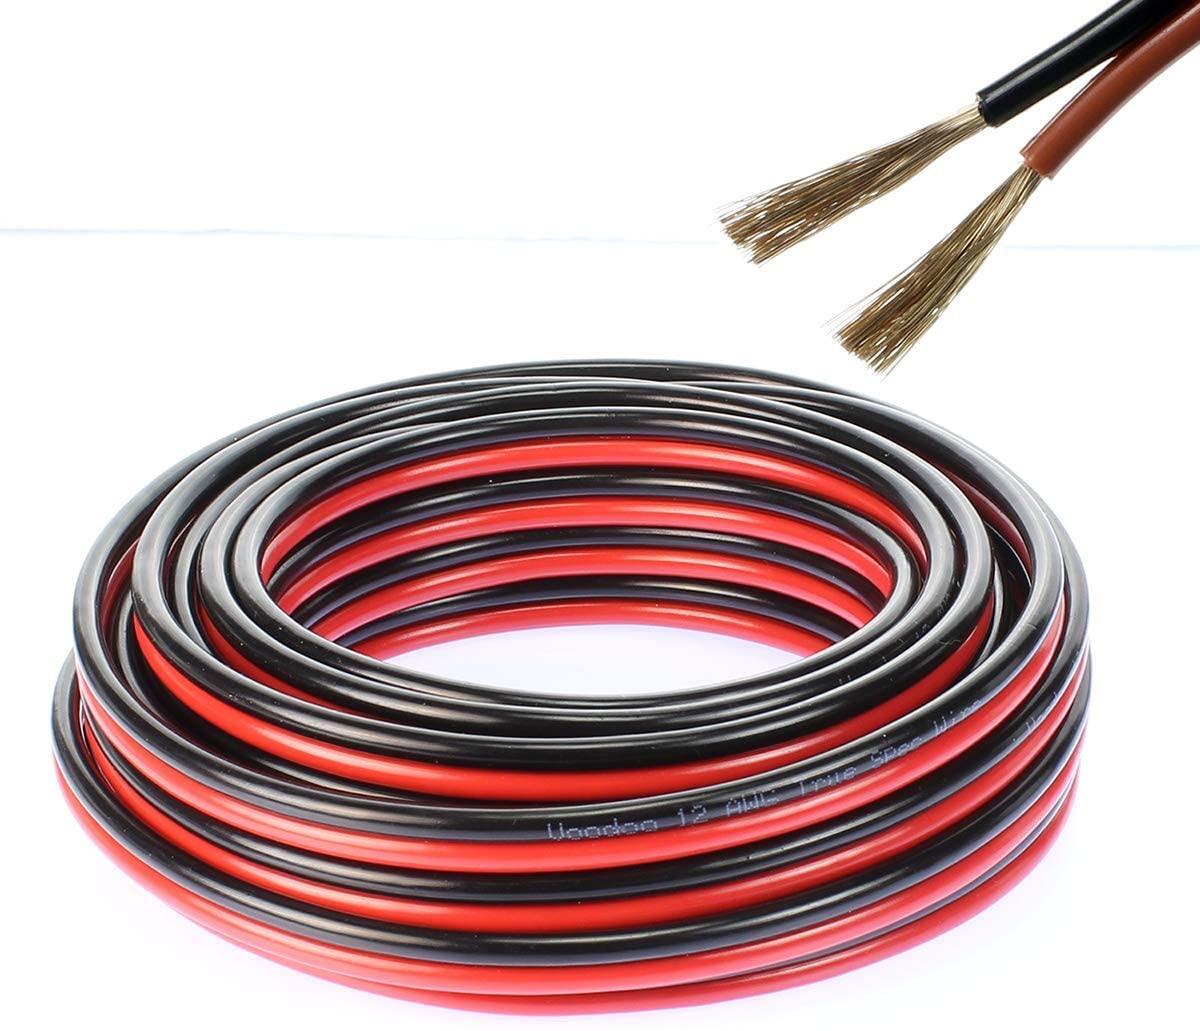 สายไฟ แดงดำ 17awg (1 mm²) สายลำโพง สายไฟคู่ สายคู่ electrical wire cable เครื่องเสียง รถยนต์ car aud สี ชุด 1 เมตร 5 เส้น สี ชุด 1 เมตร 5 เส้น